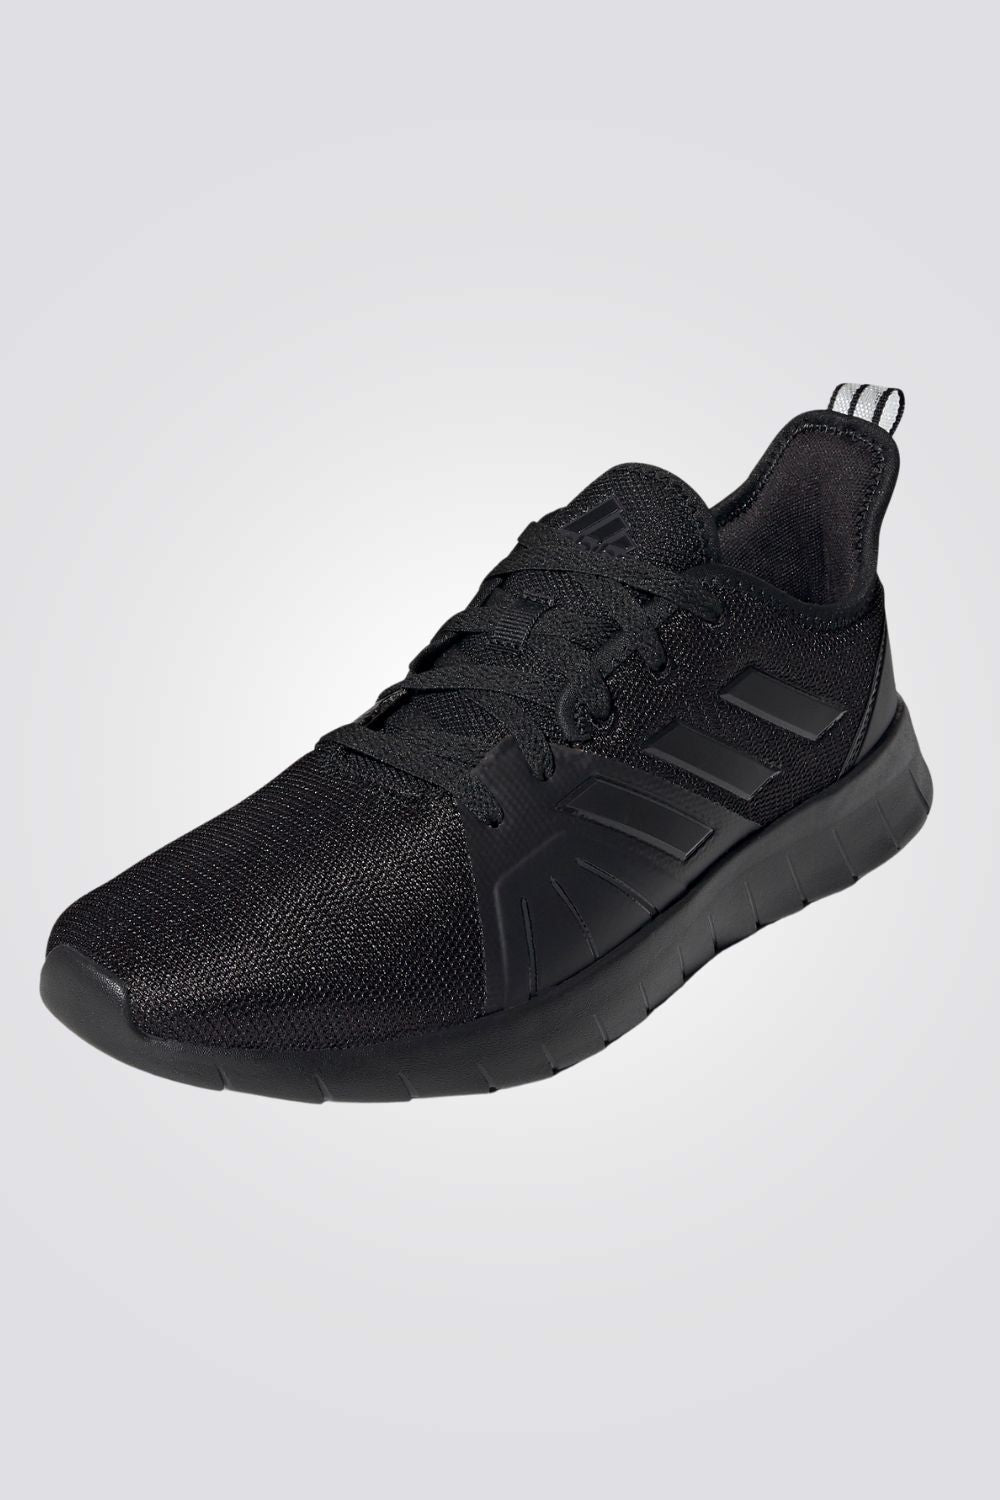 נעלי ספורט לגברים ASWEEMOVE 2.0 בצבע שחור ואפור